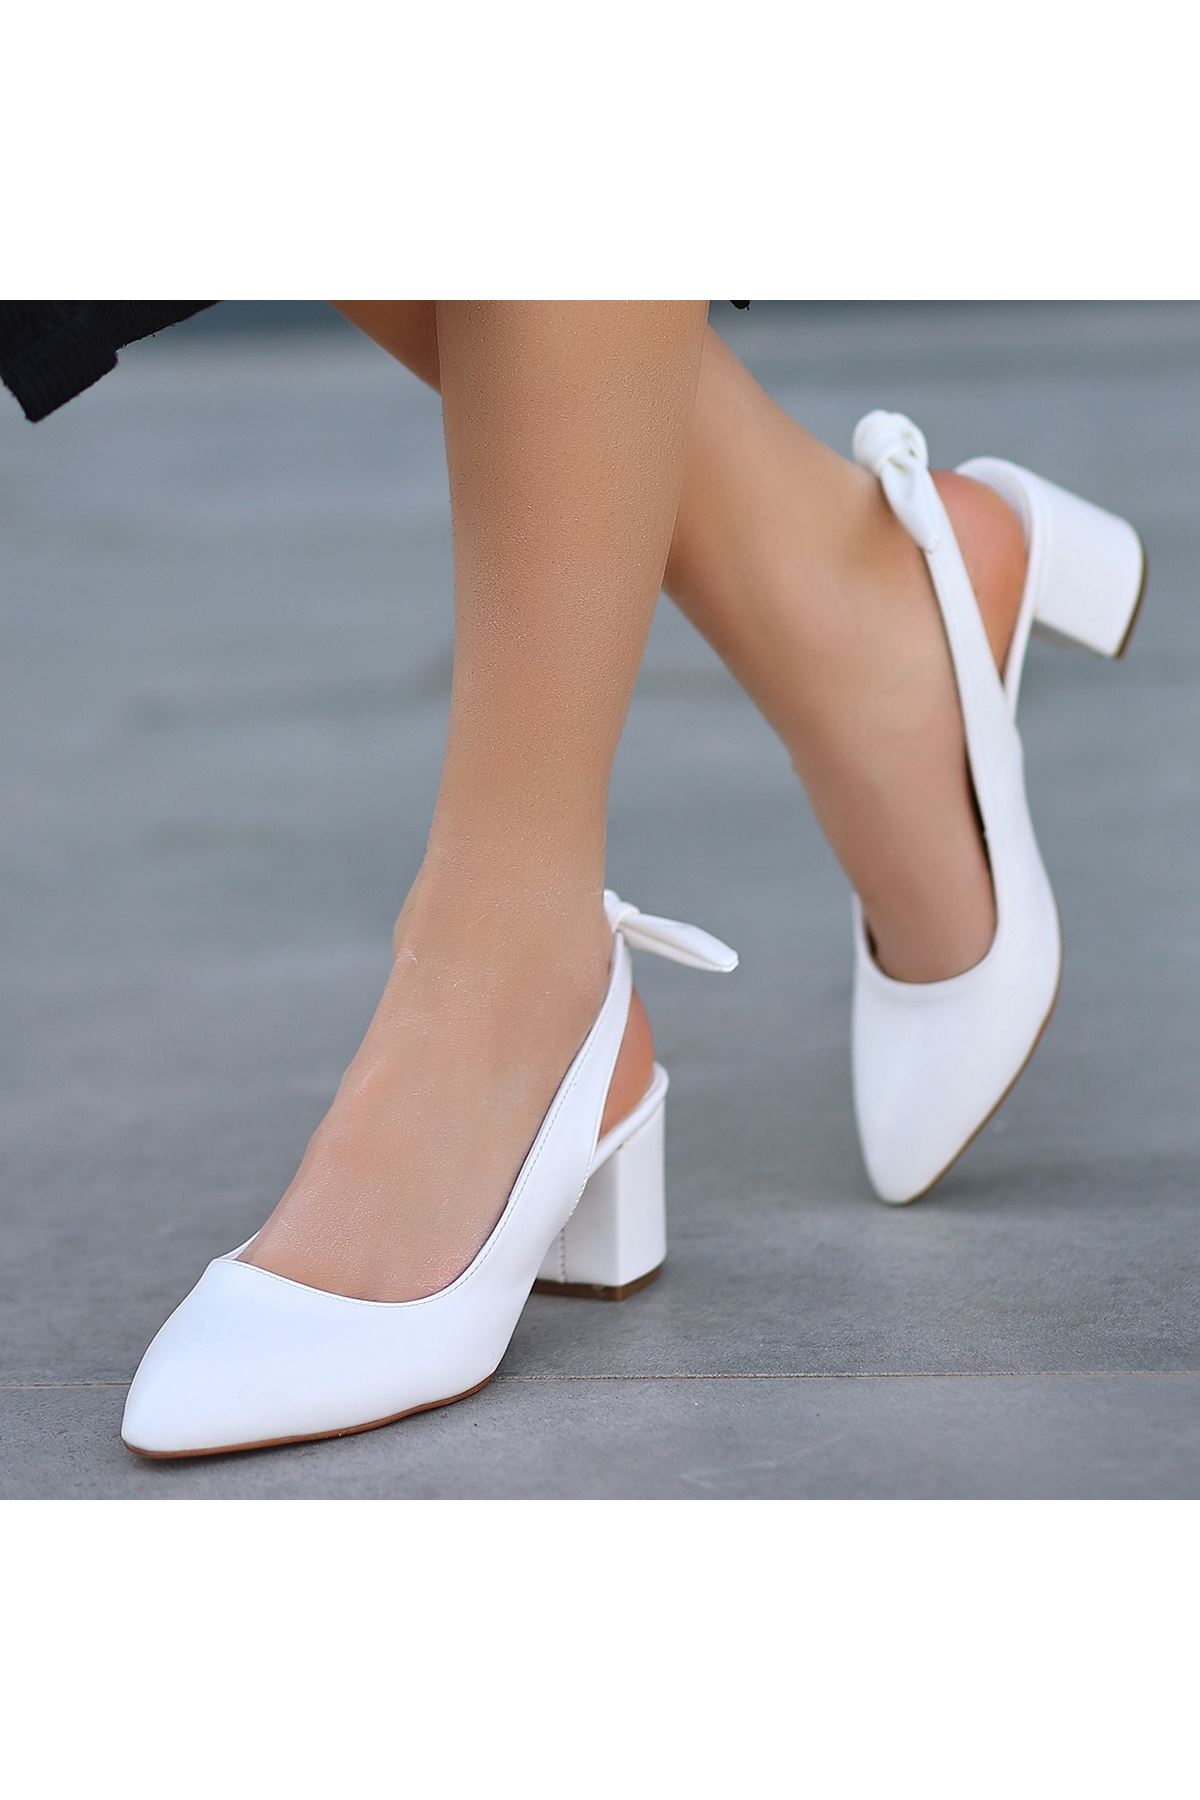 Poly Beyaz Cilt Topuklu Ayakkabı